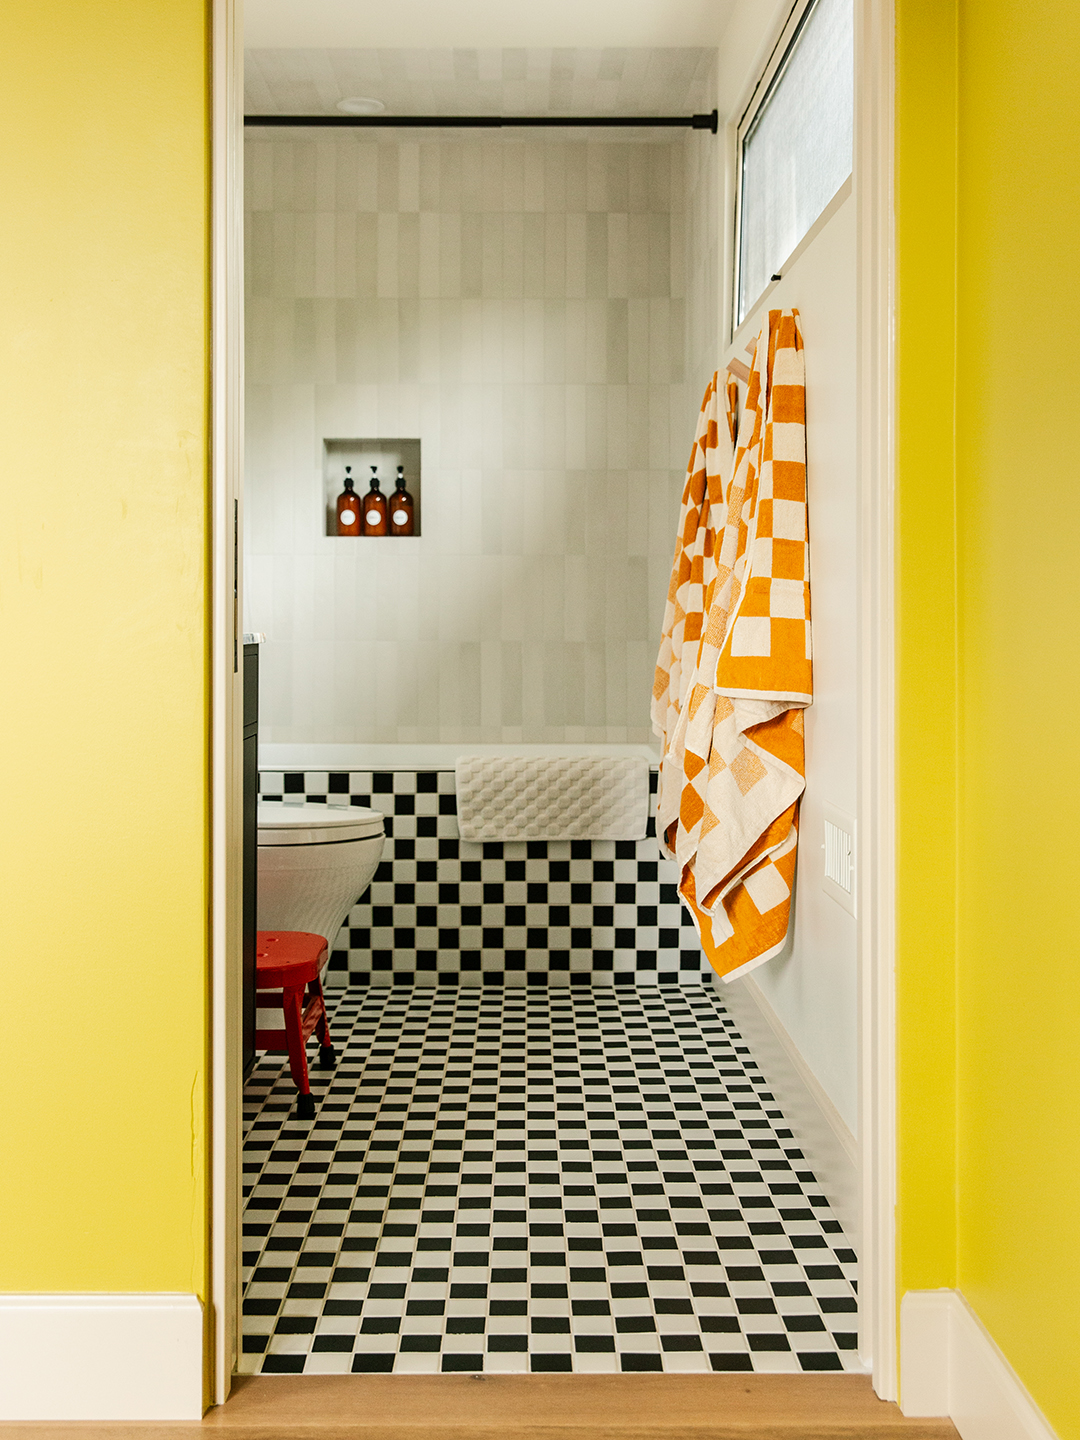 checkered bathroom tile